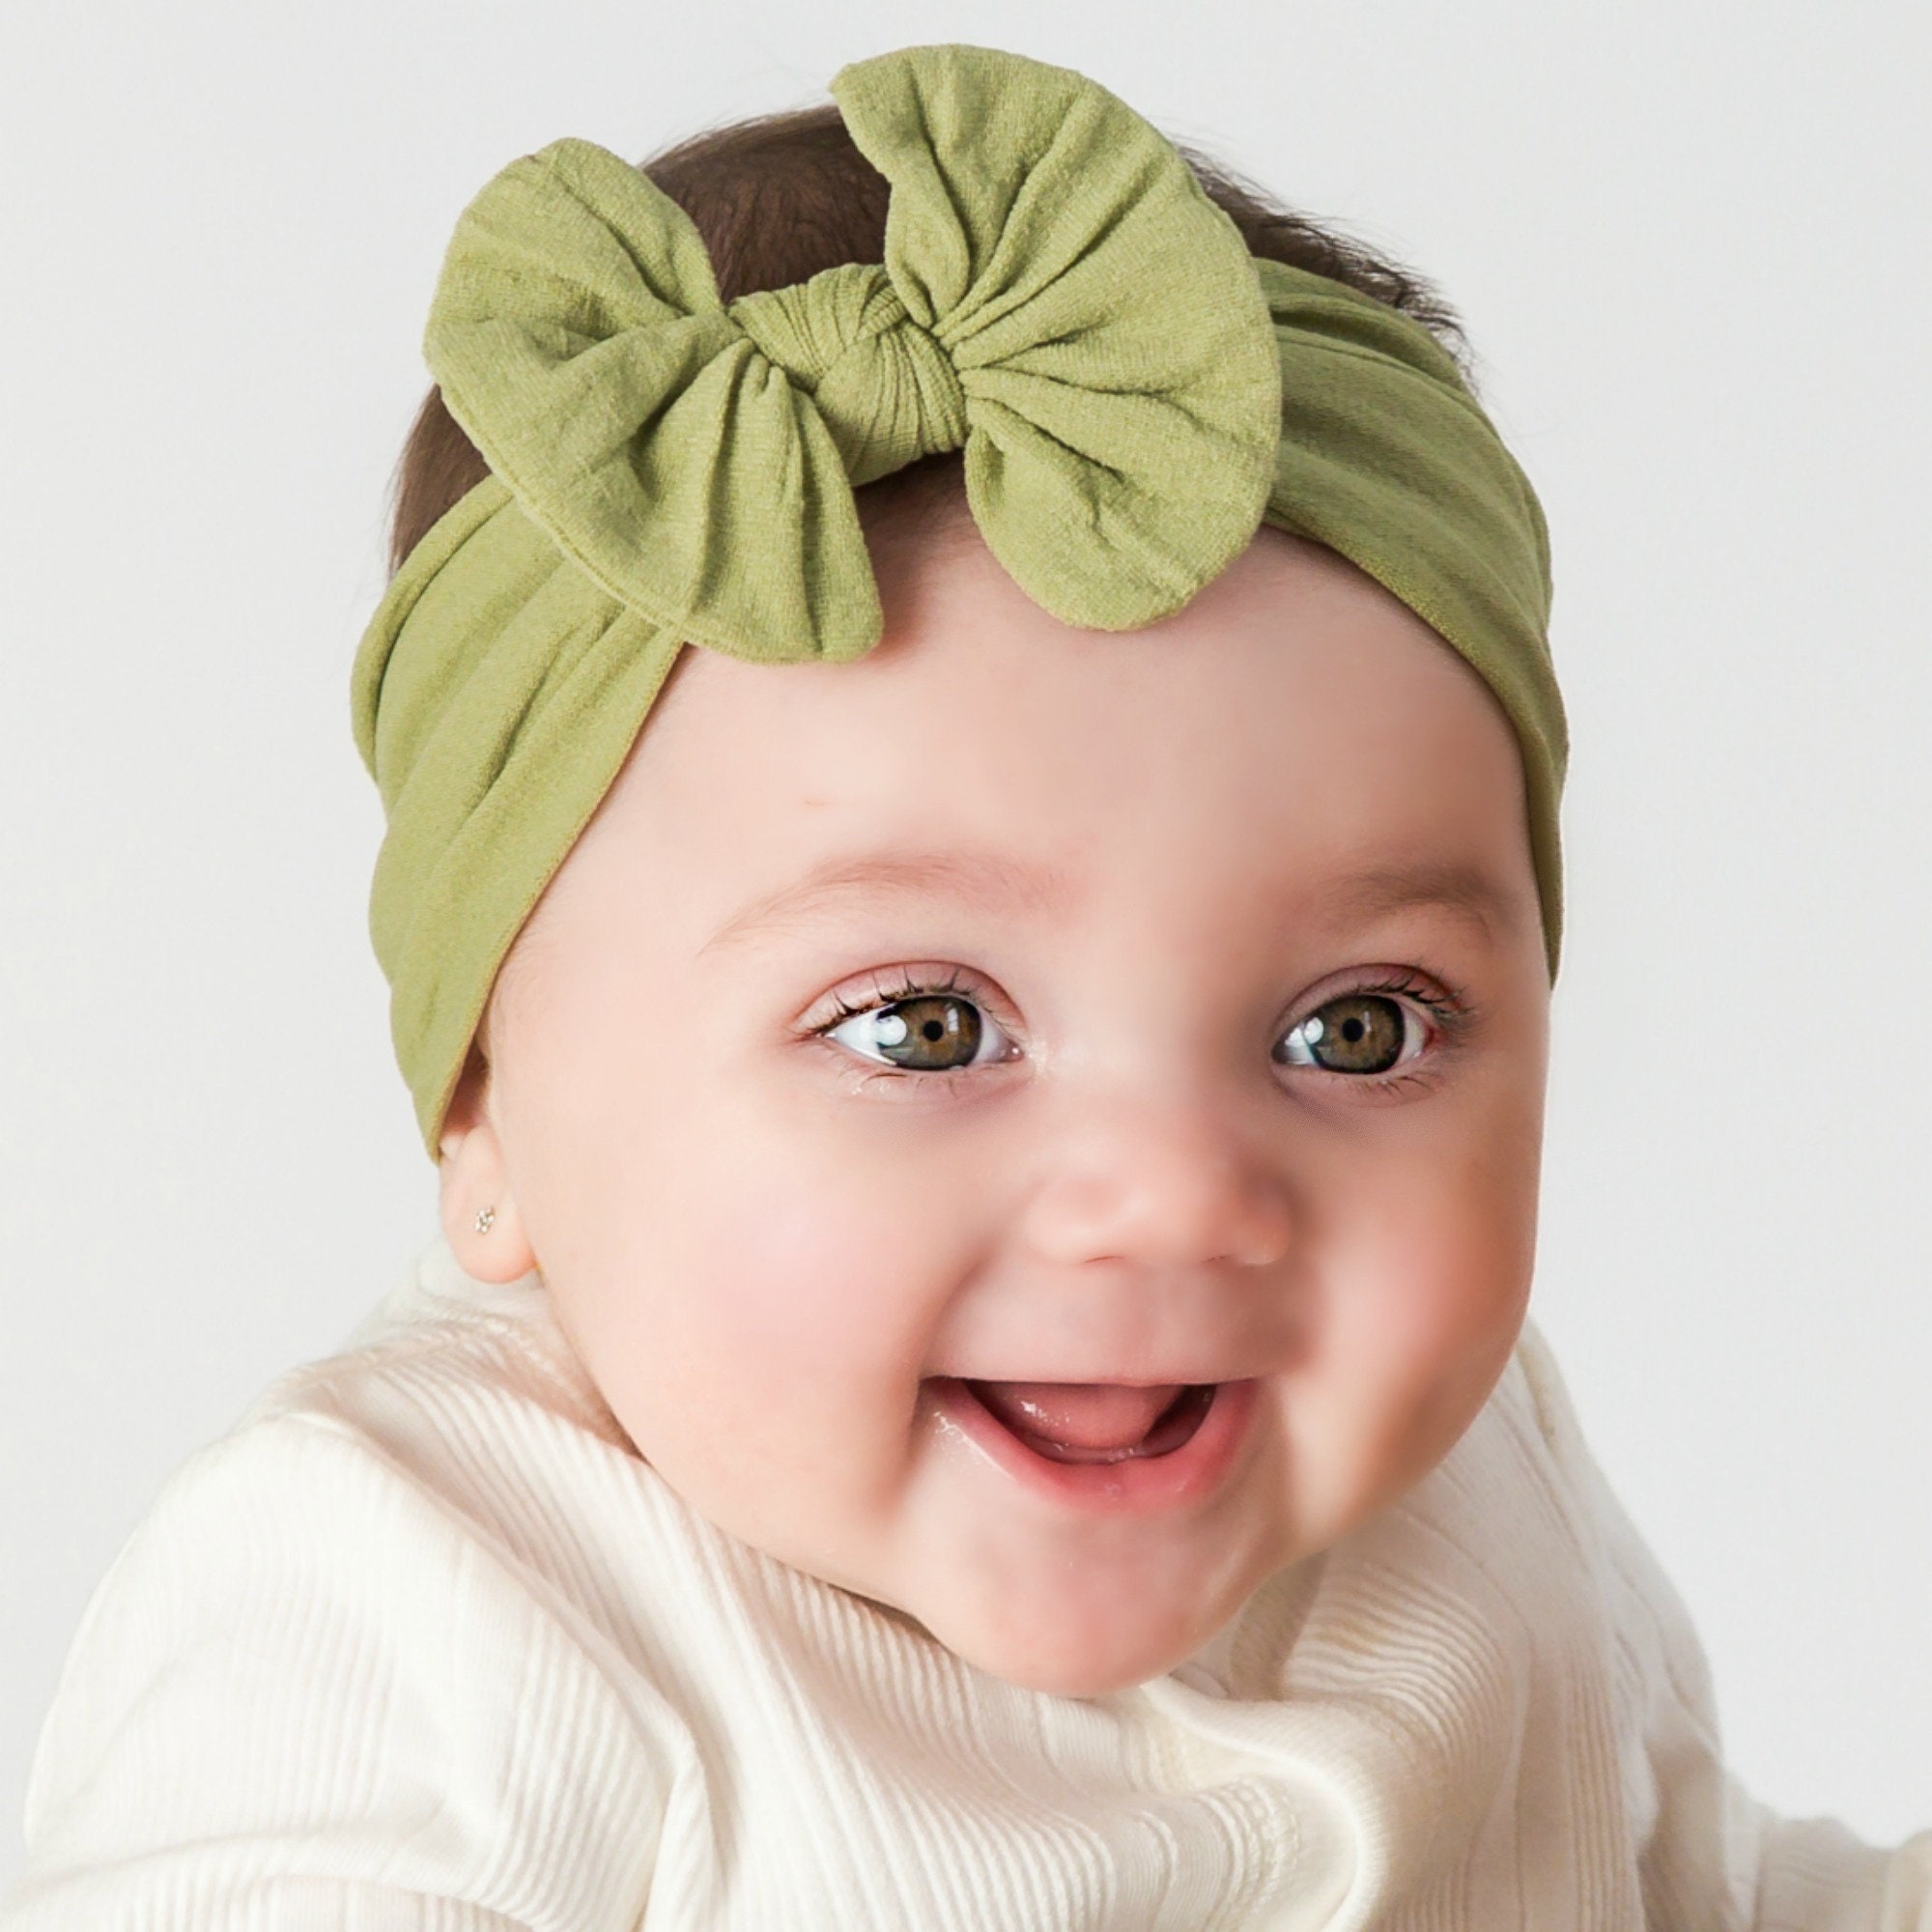 Nylon Baby Headbands One Size Fits All Baby headband Top | Etsy